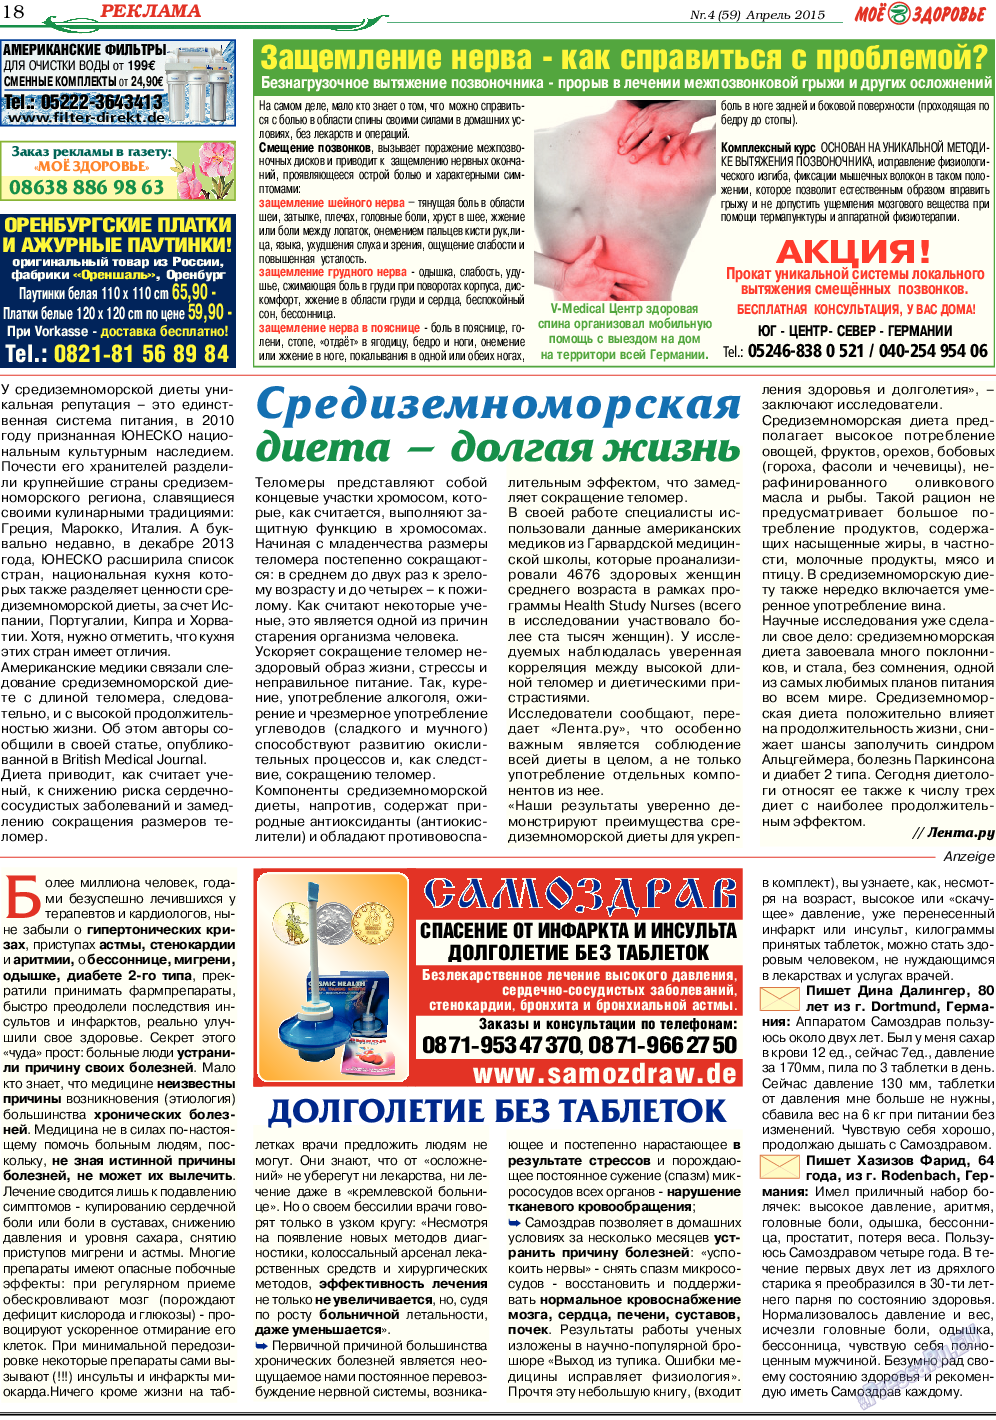 Кругозор, газета. 2015 №4 стр.18